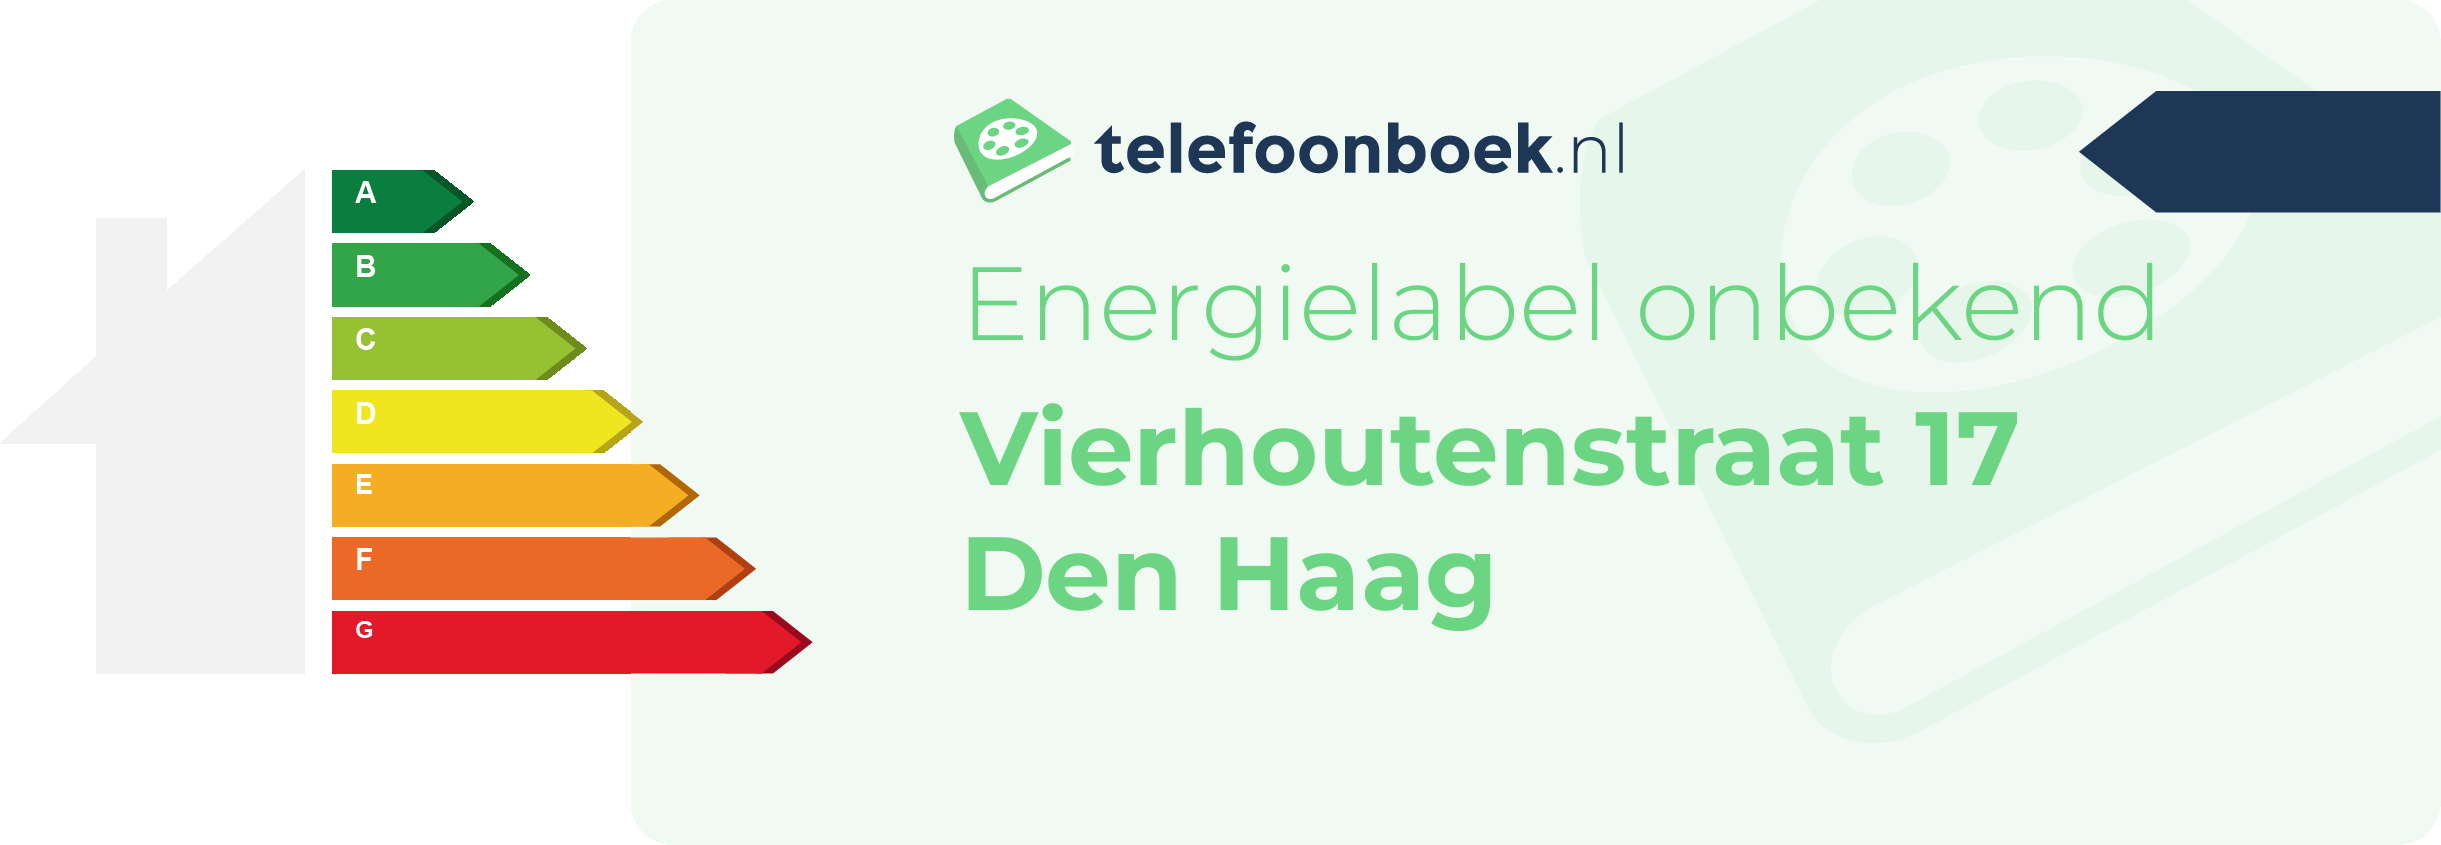 Energielabel Vierhoutenstraat 17 Den Haag